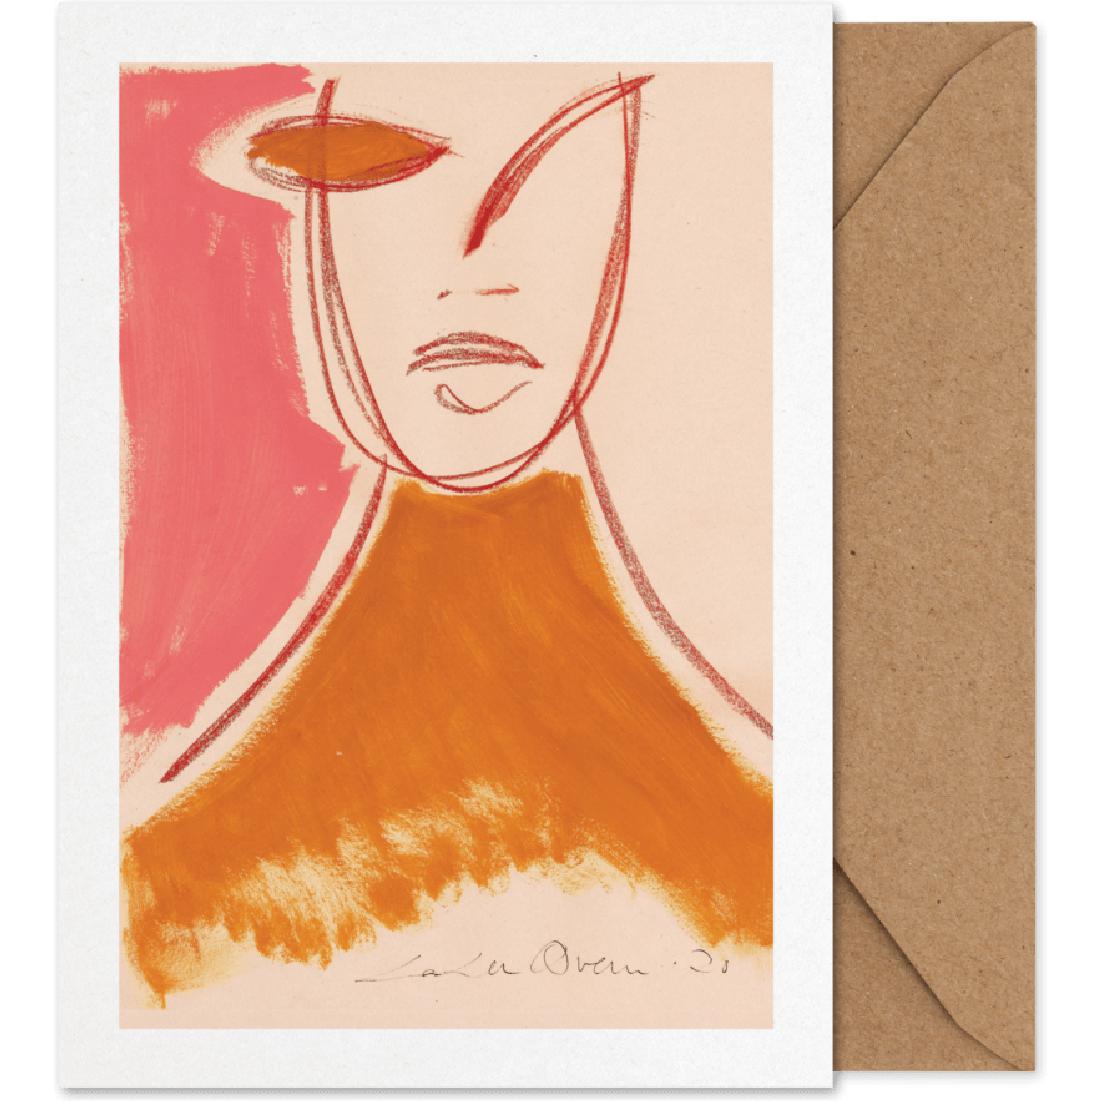 Carta d'arte del ritratto rosa collettivo di carta